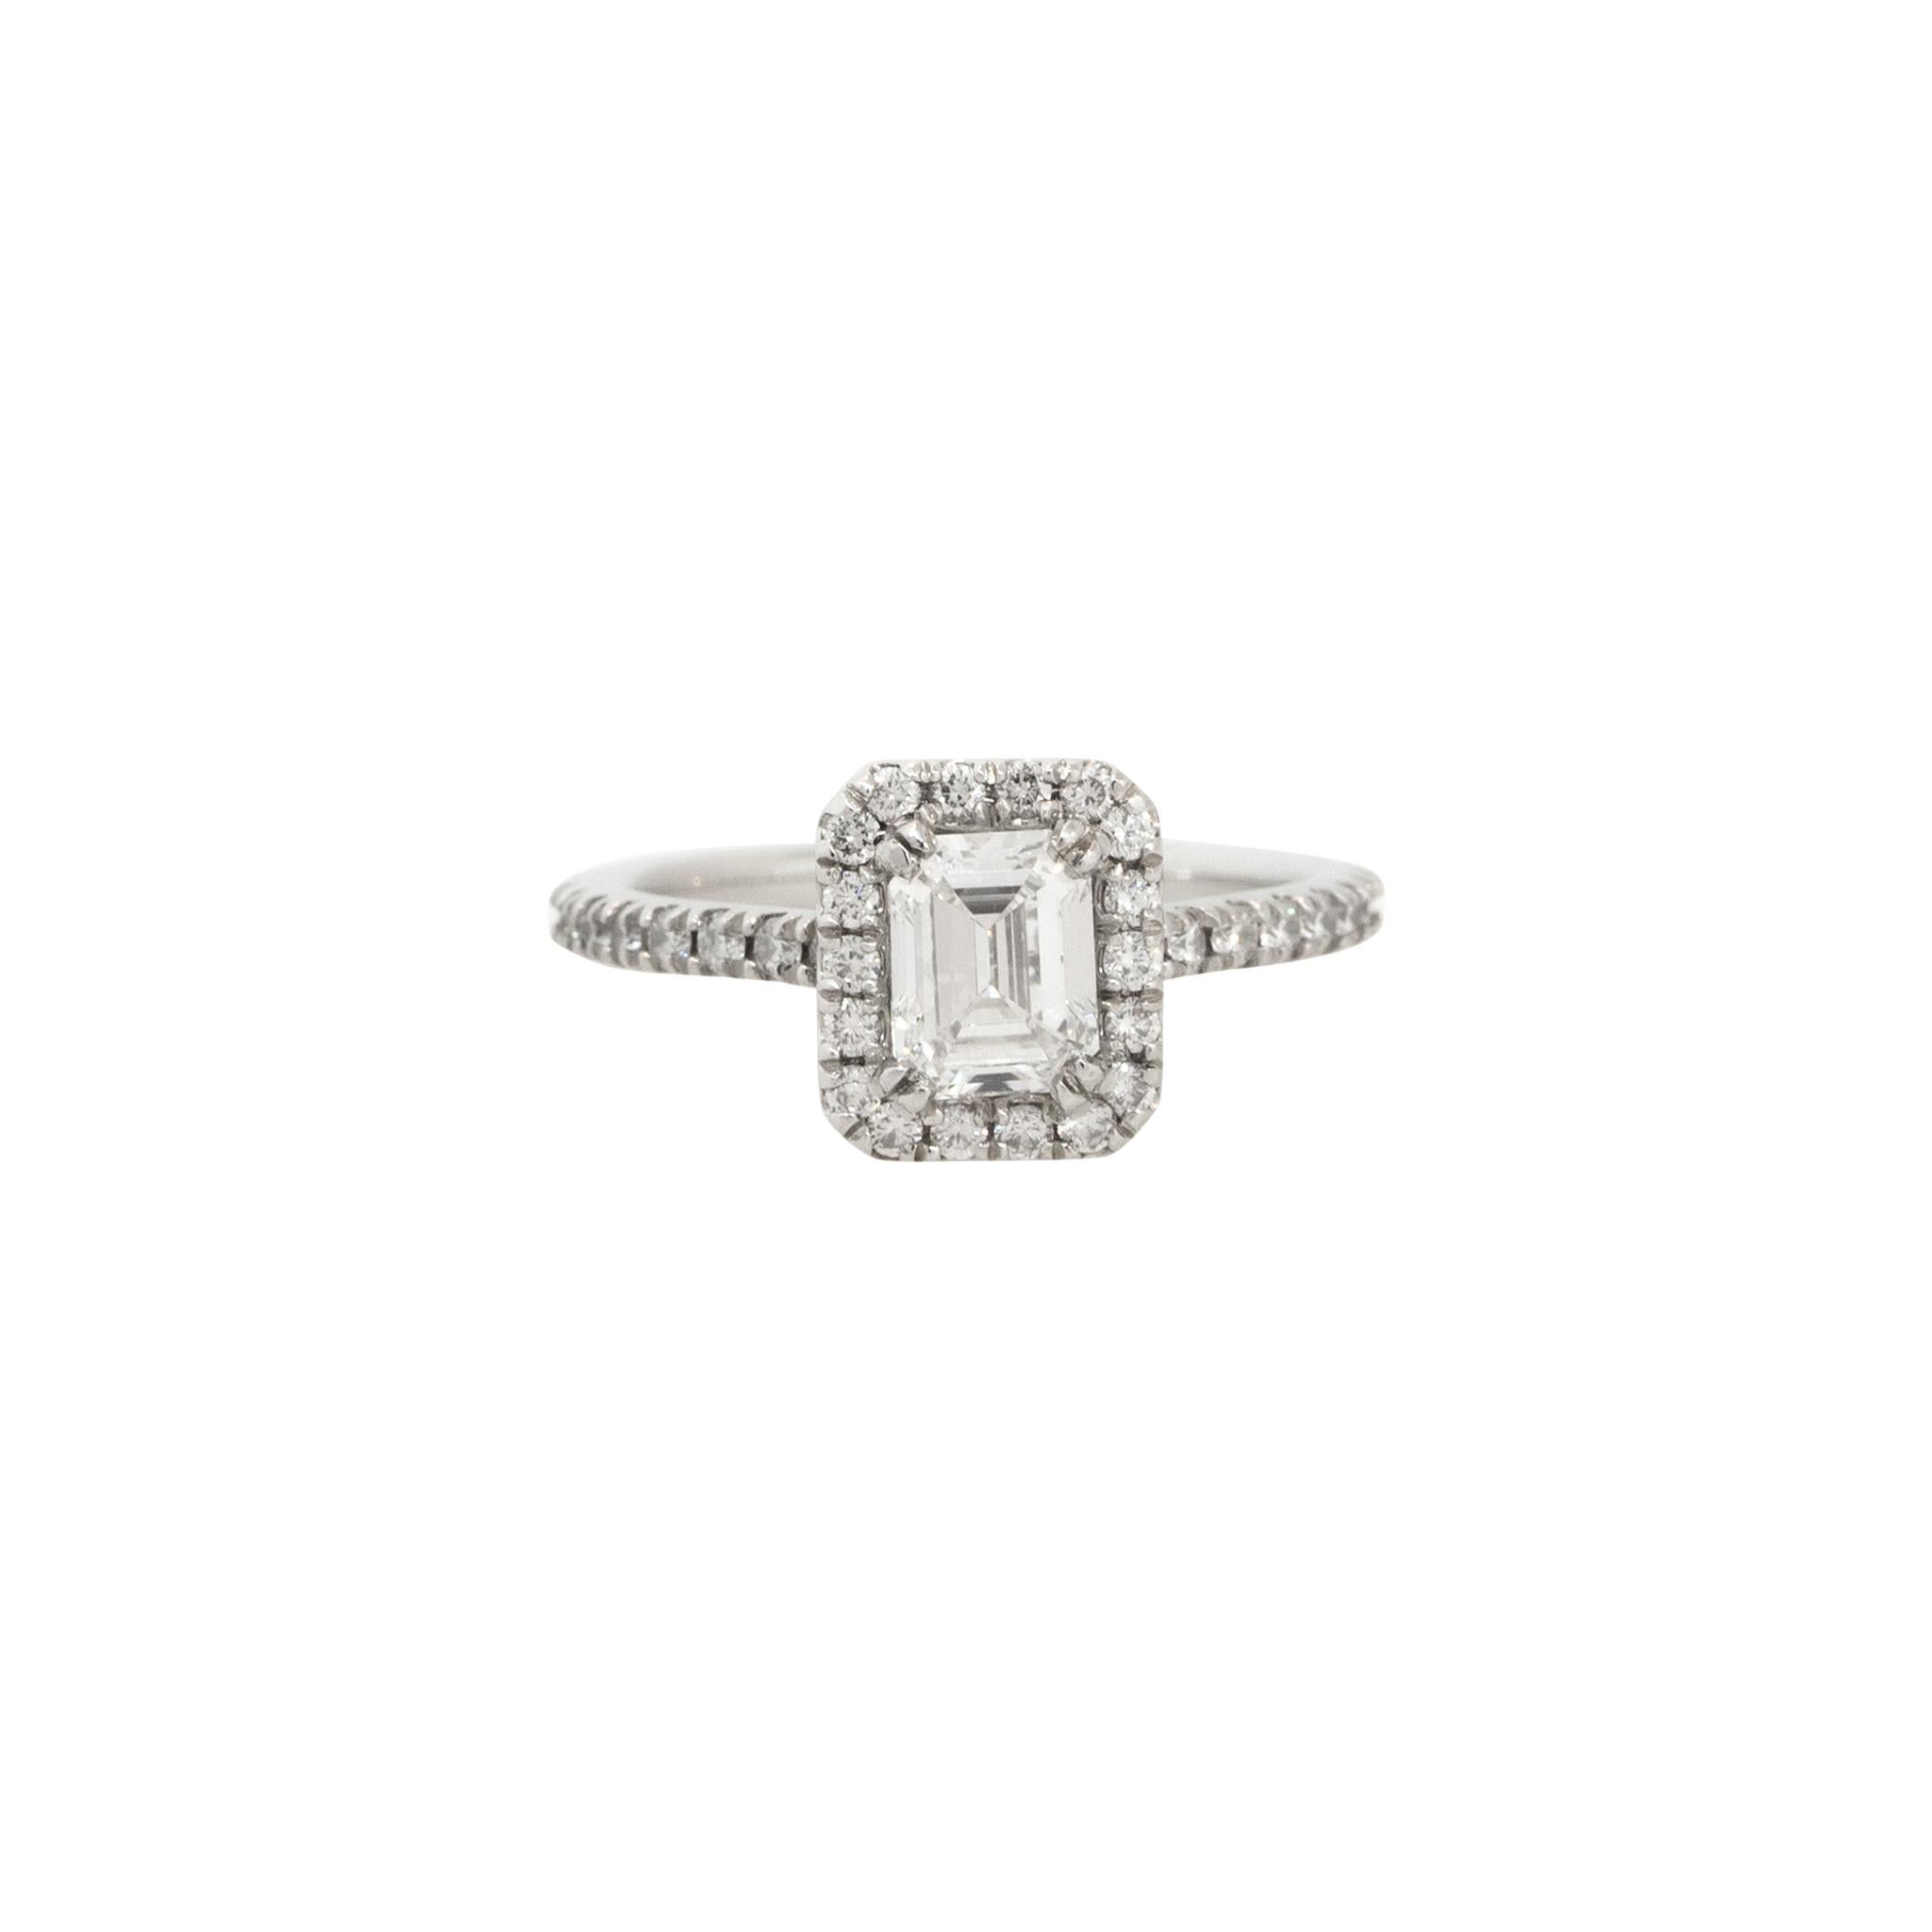 Bague de fiançailles en platine certifié par le GIA, avec un diamant taille émeraude de 1,58ctw.

Matériau : Platine
Détails du diamant principal : Environ 0,83ctw de diamant taille émeraude. Le diamant central est certifié GIA (#1166509213). Le